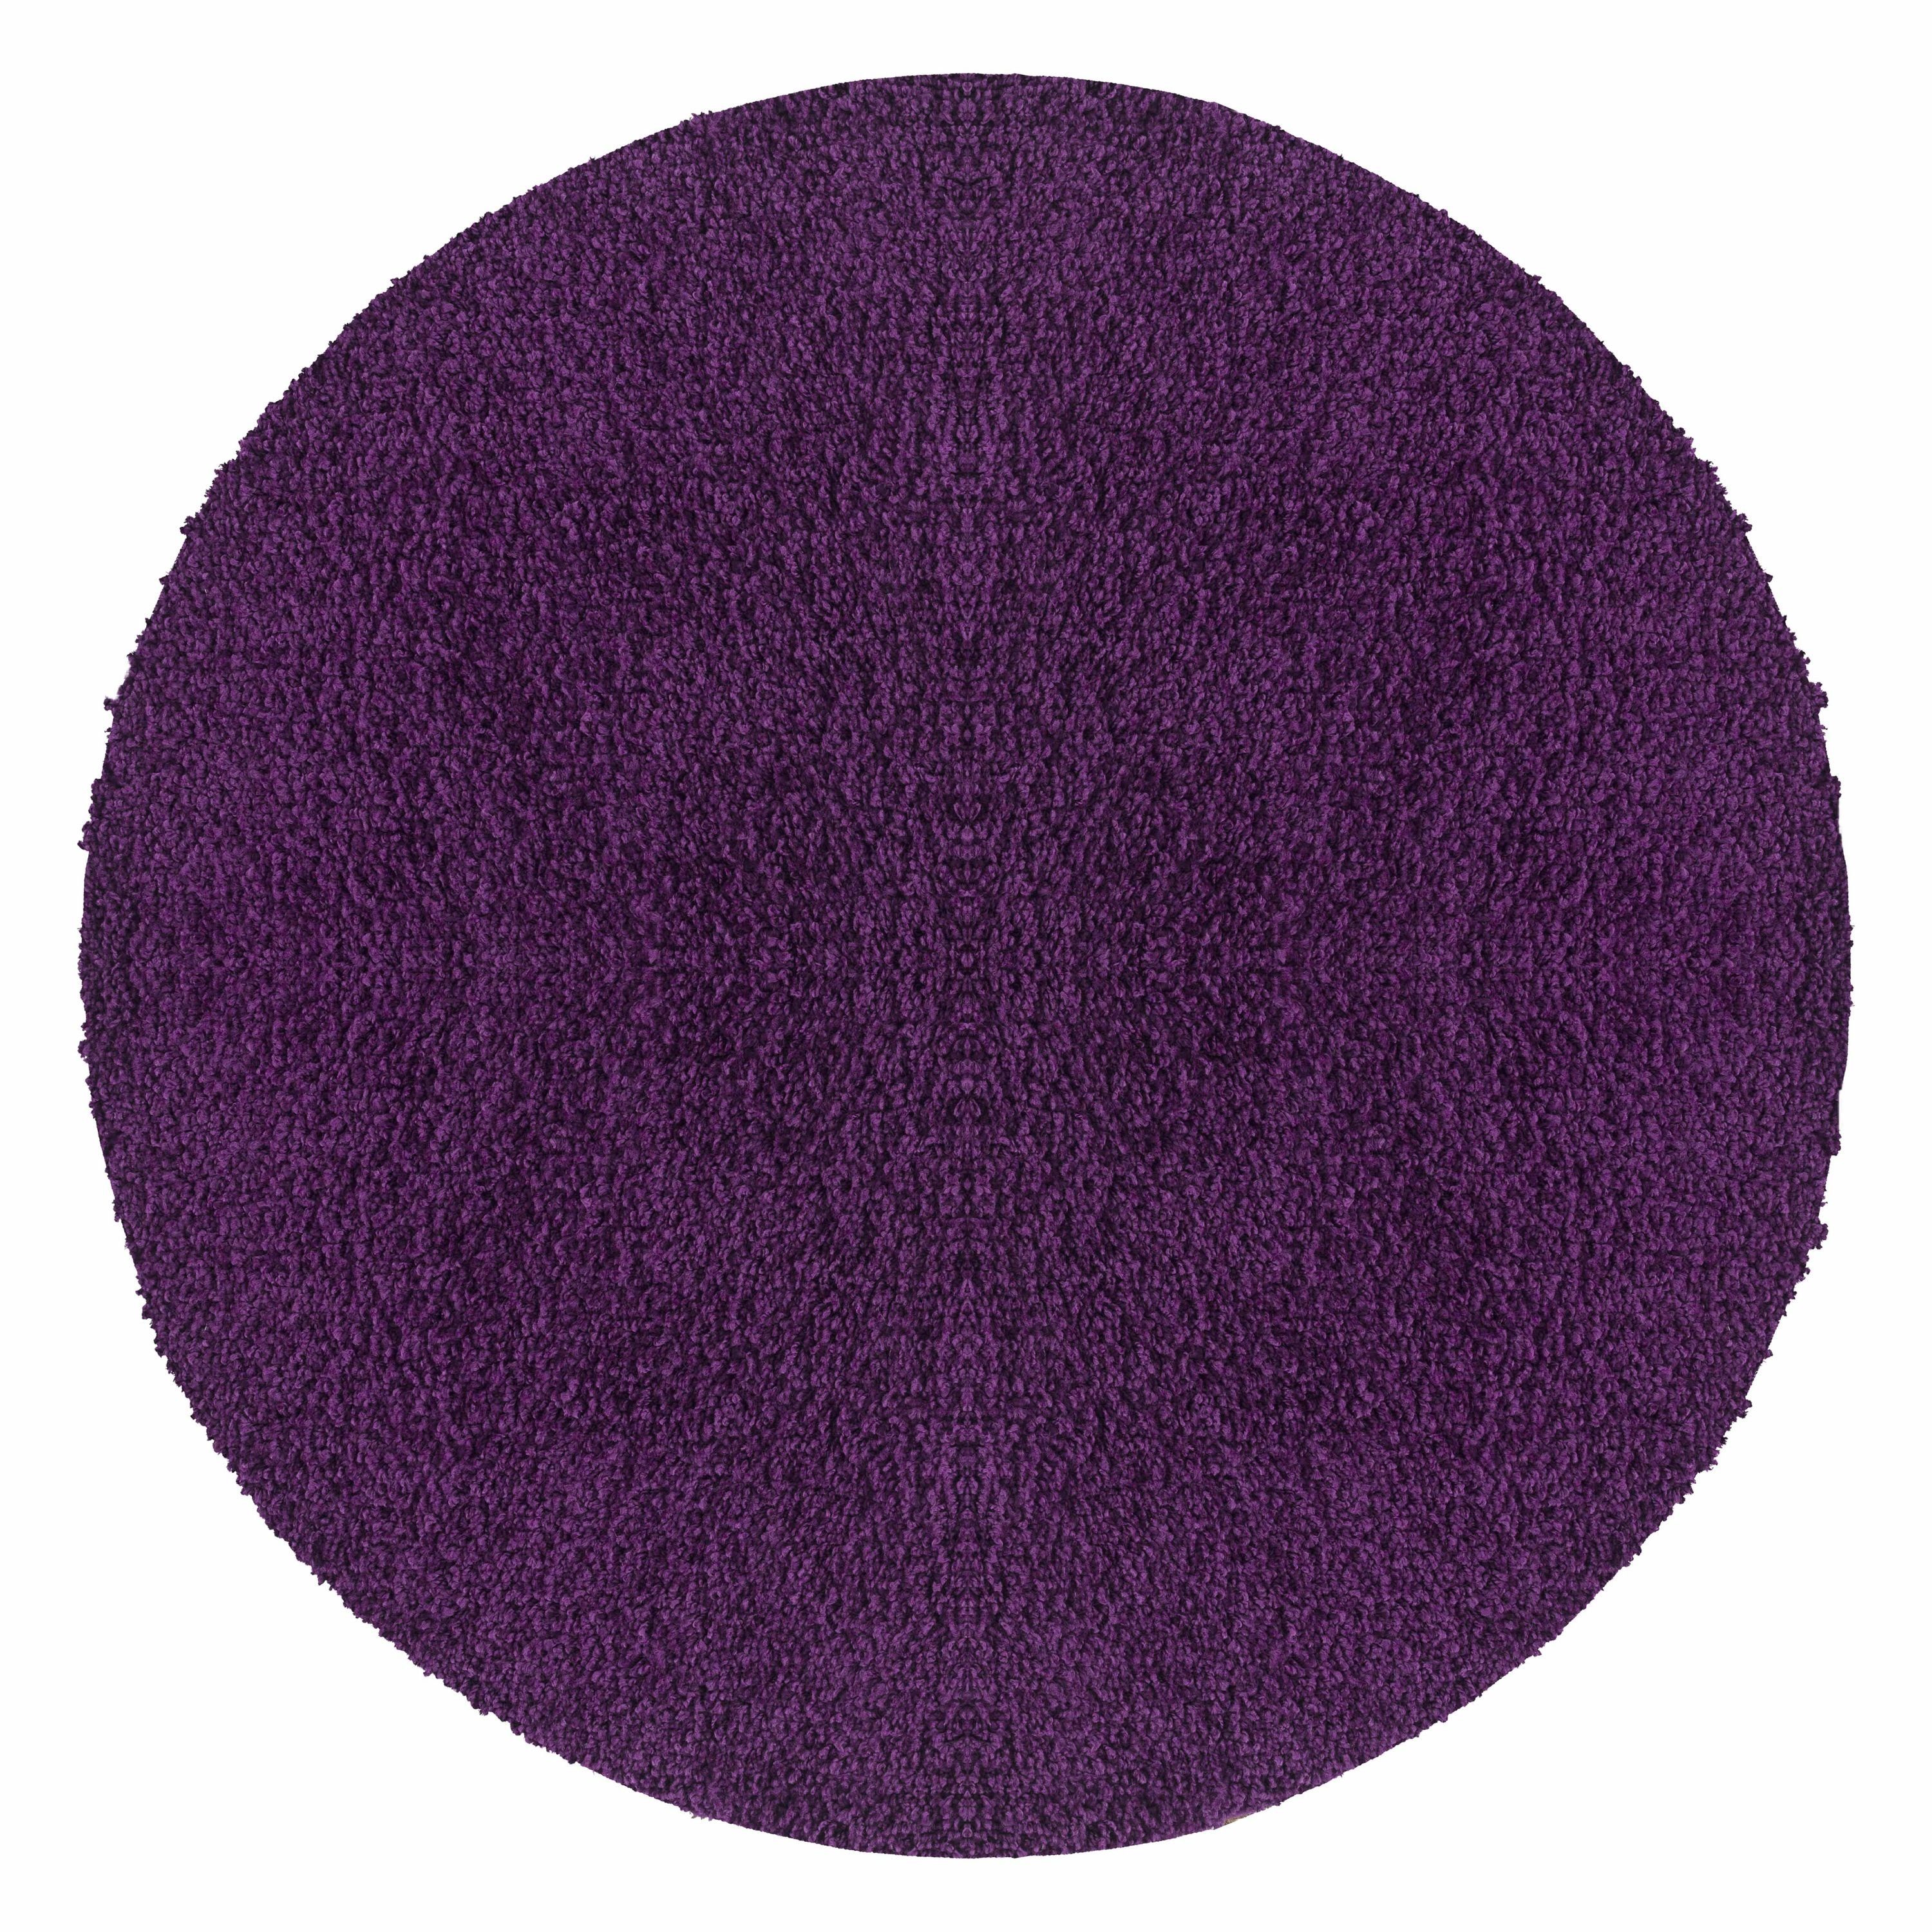 den besten Service bieten Teppich Unicolor - Einfarbig, Teppium, Teppich 50 mm, Wohnzimmer Höhe: Lila Rund